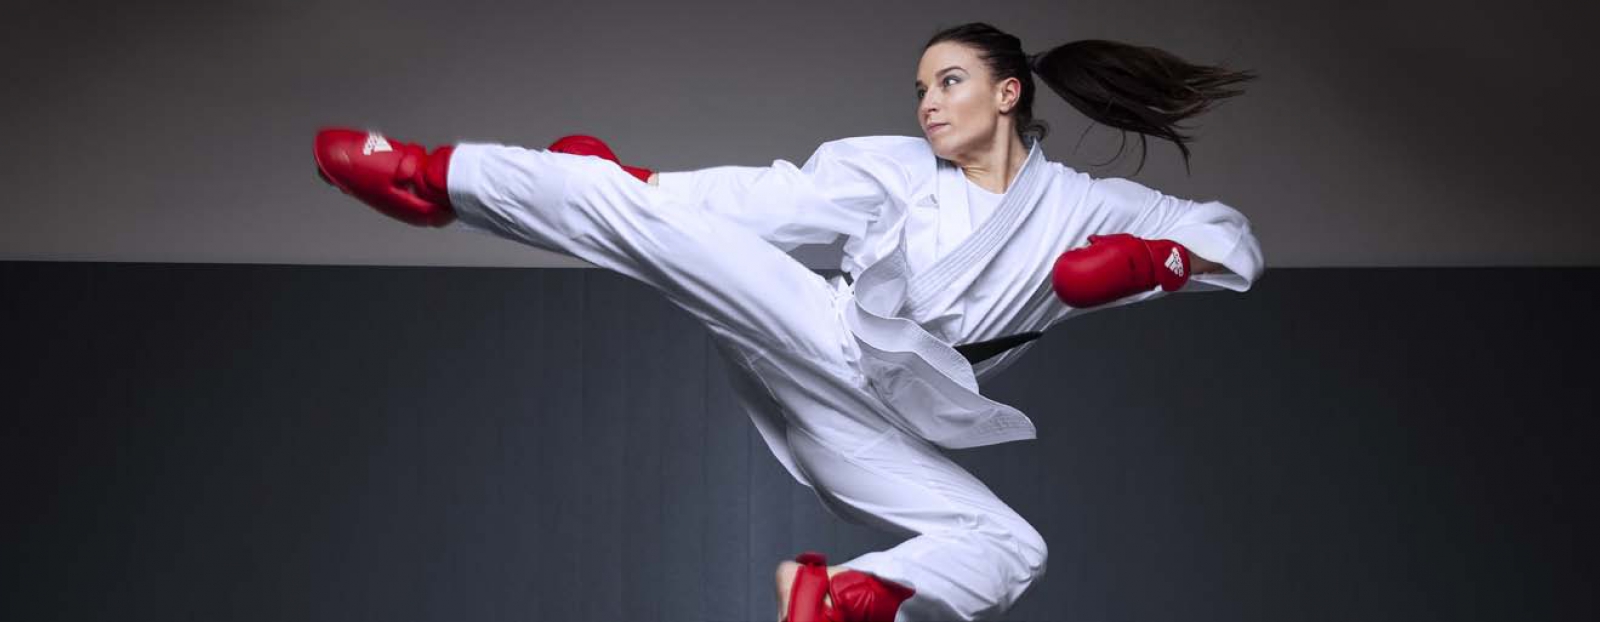 open riccione karate 2019